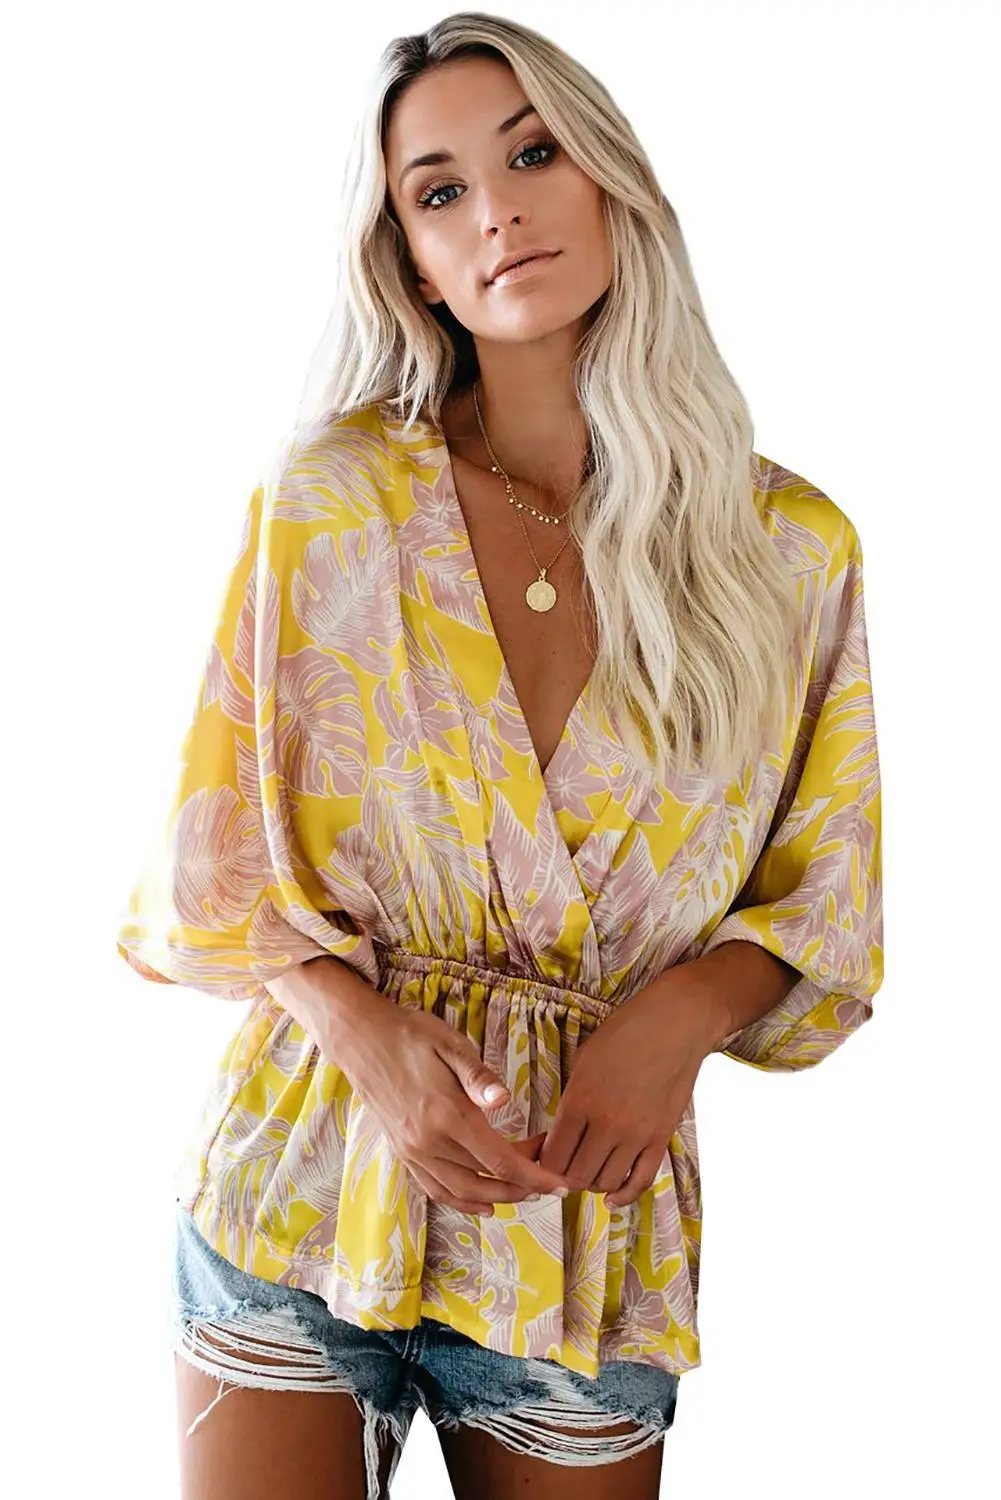 Taupe Hut атласная кимоно блузка с принтом Топ небесно-голубой/желтый летний v-образный вырез Половина рукава эластичный пояс модная блузка для отдыха 2XL - Цвет: Цвет: желтый